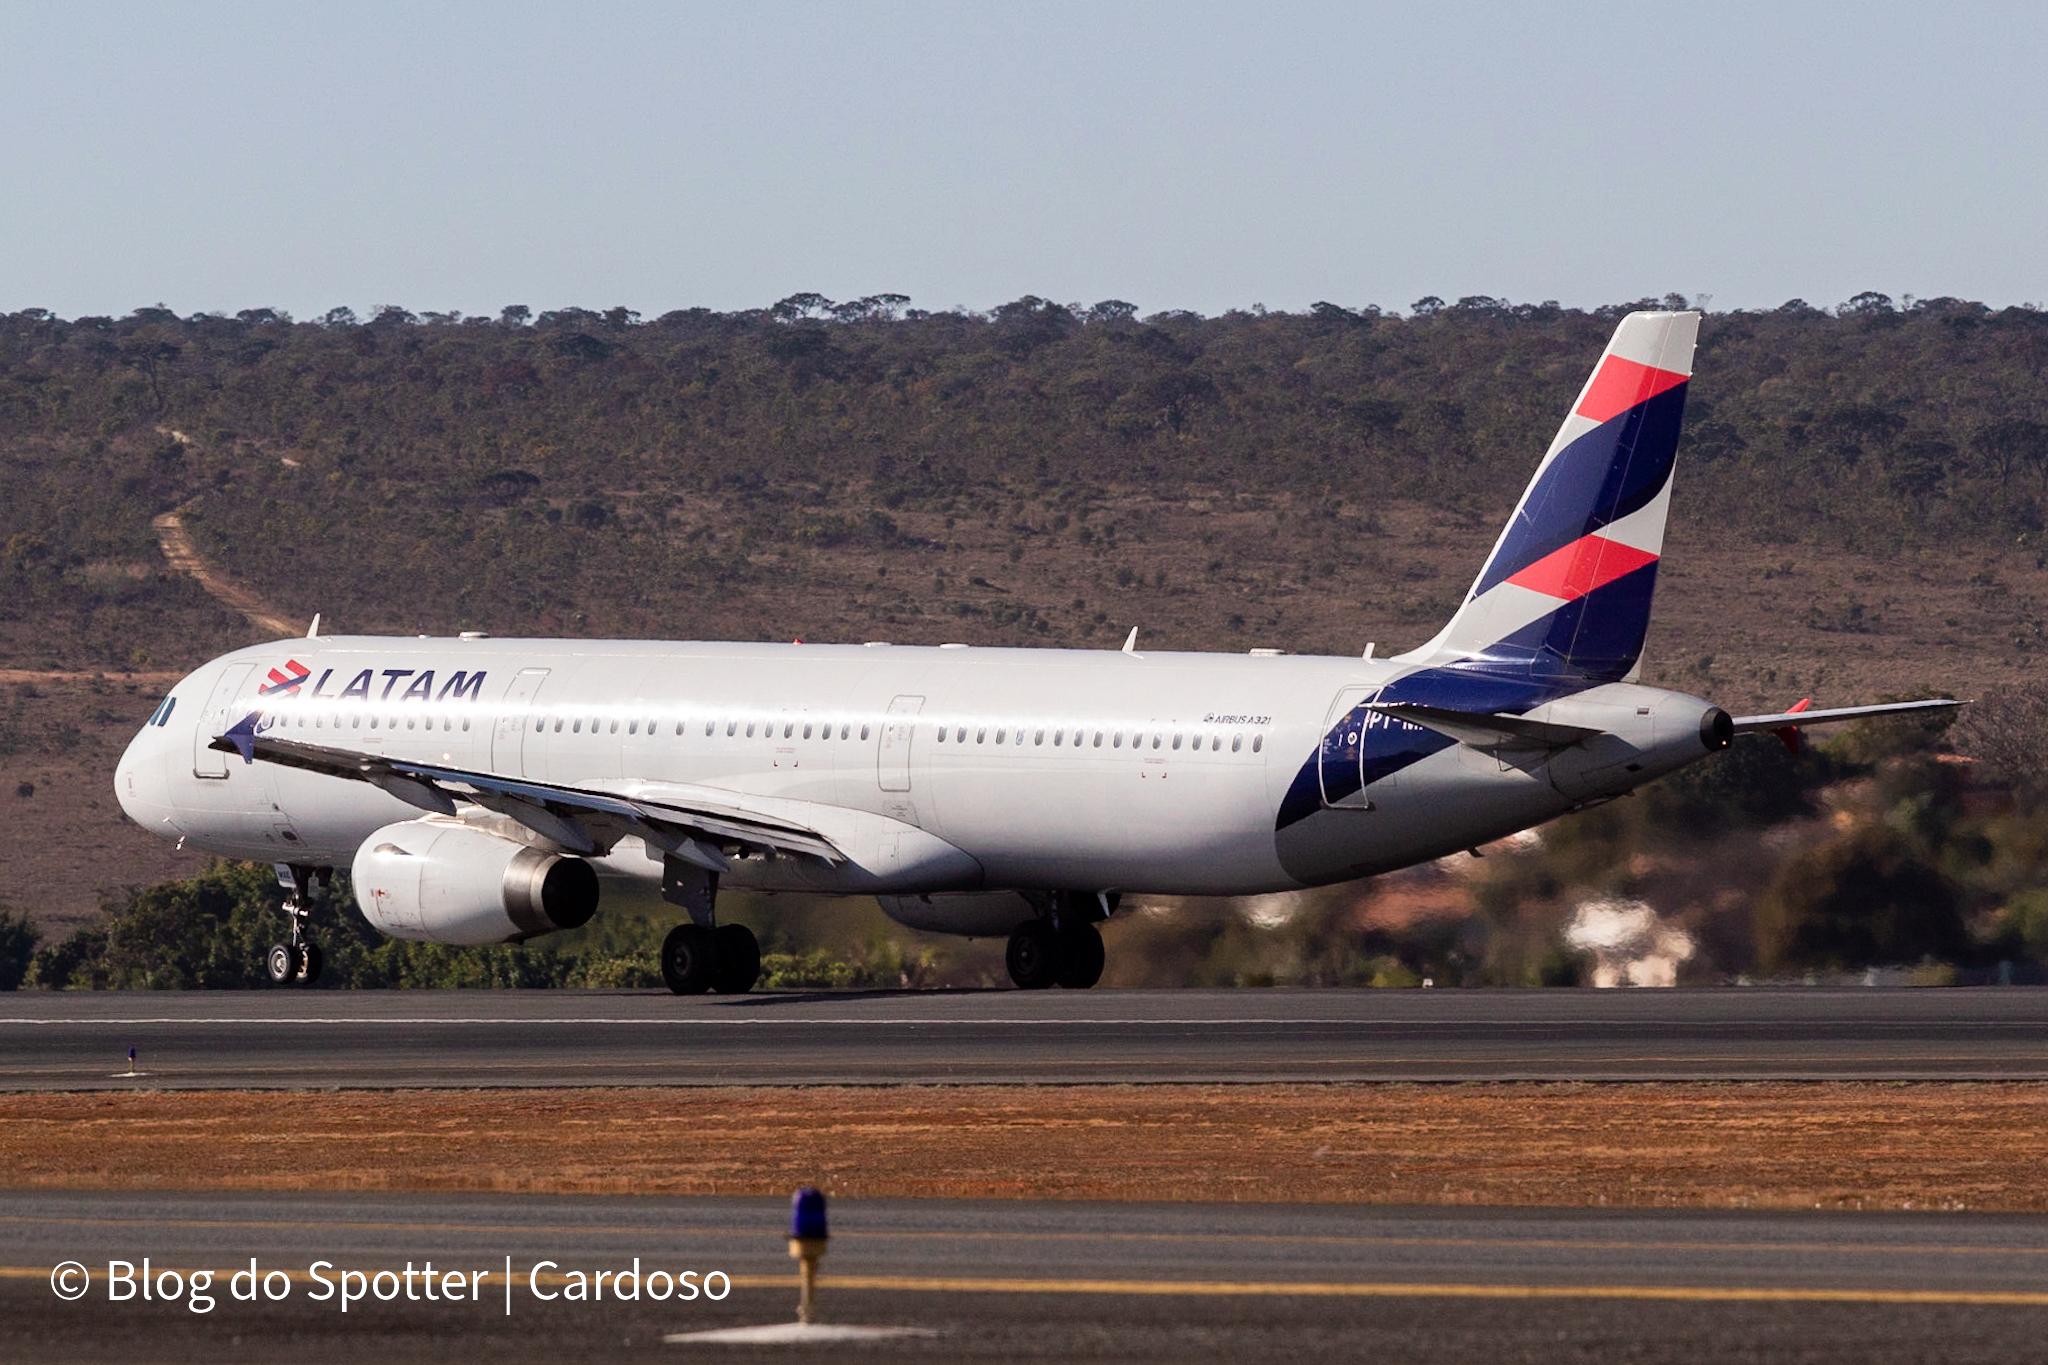 PT-MXE - Airbus A321-231 - LATAM Airlines